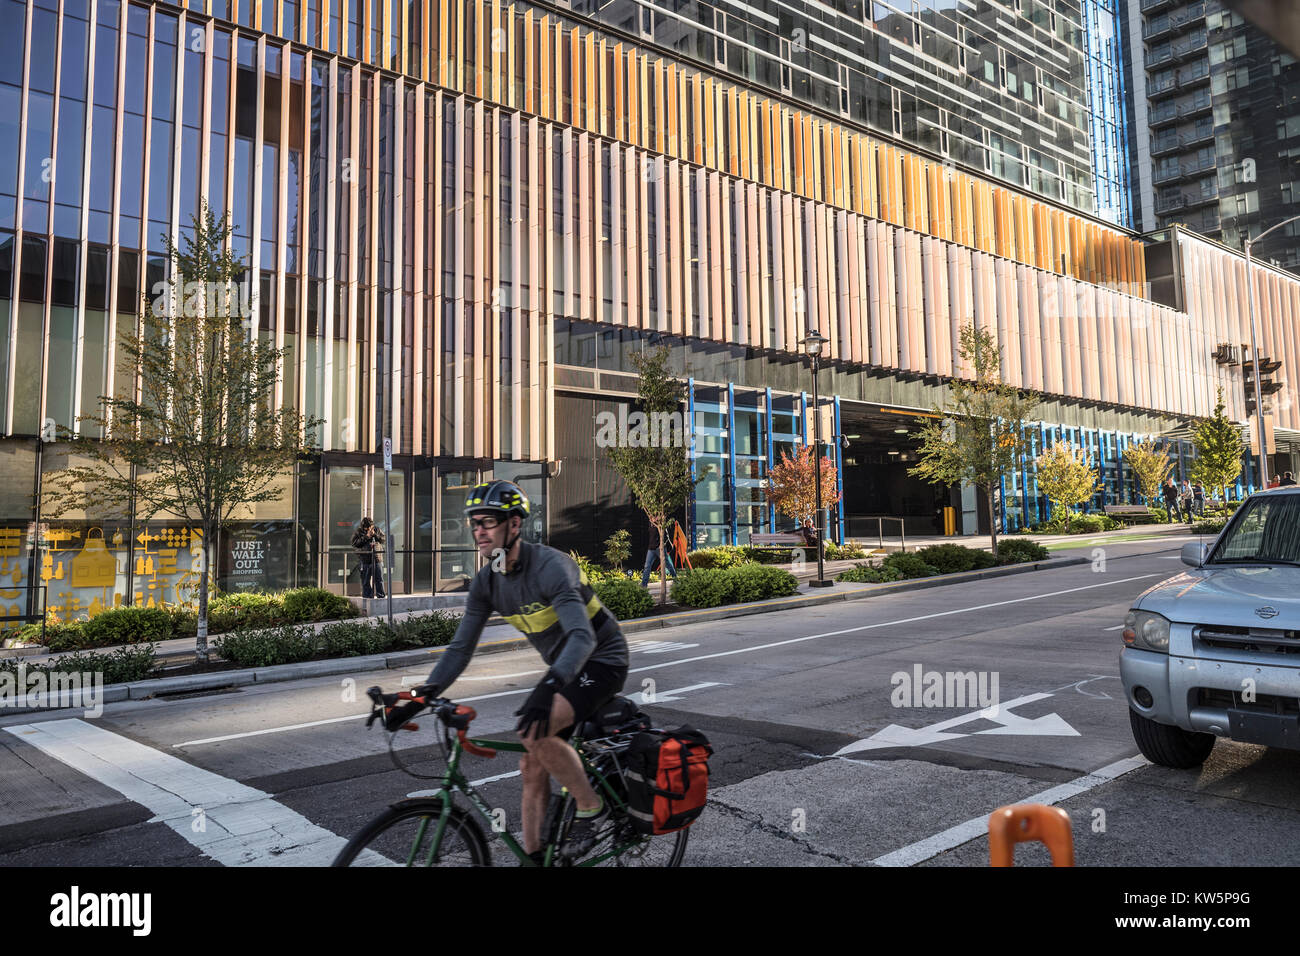 Cycliste sur la rue Blanchard en face de l'immeuble du siège de l'Amazone, Seattle, Washington, USA Banque D'Images